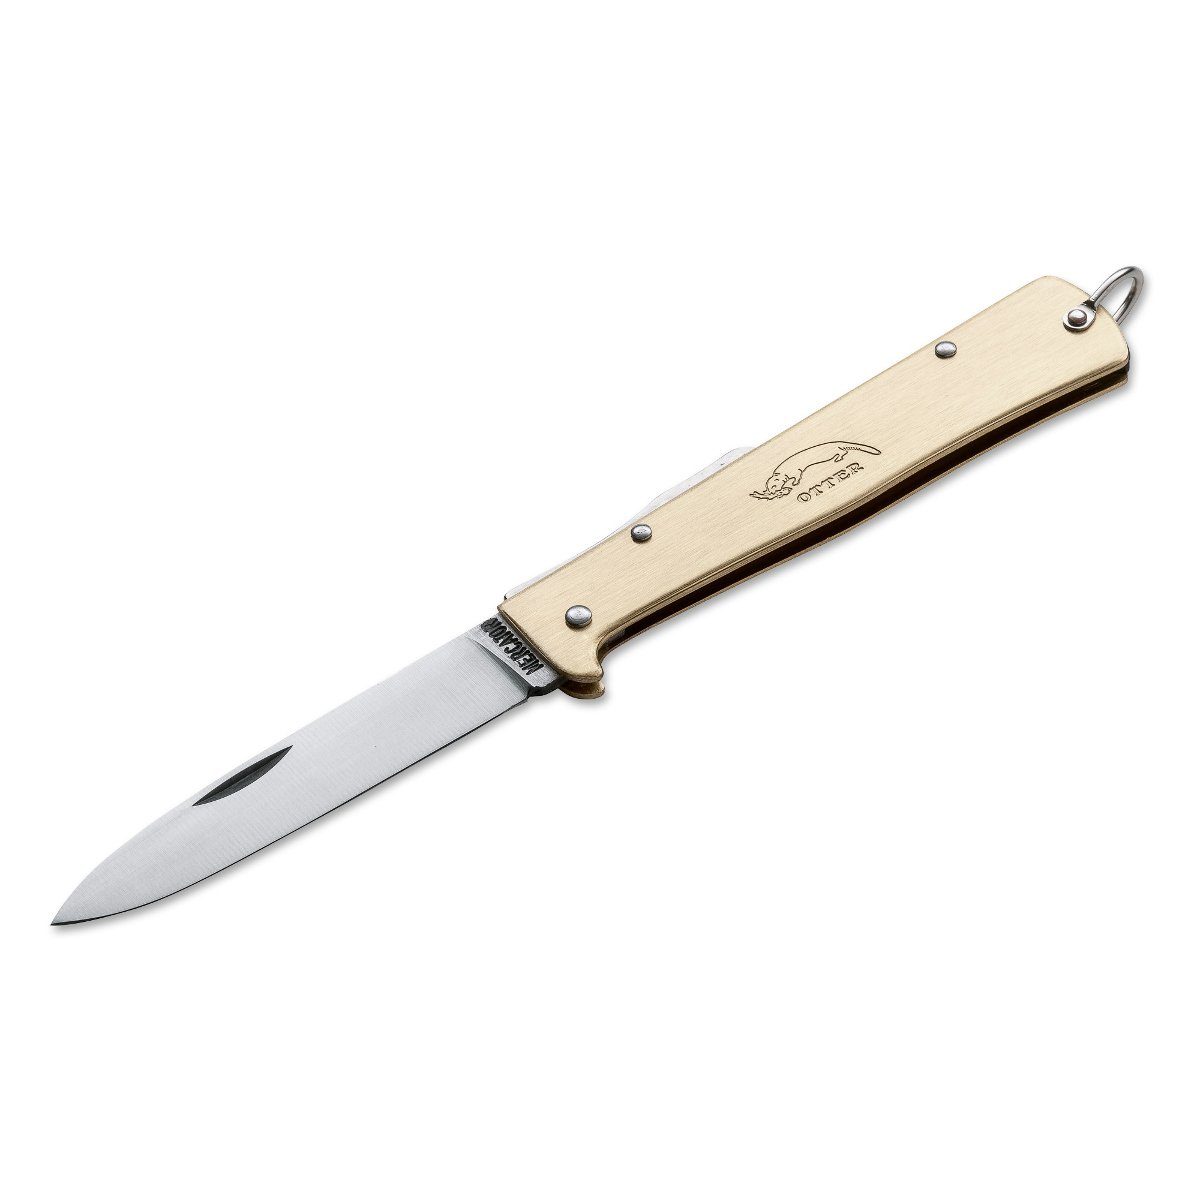 Otter Messer Taschenmesser Mercator-Messer groß Messing mit Clip, Klinge Carbonstahl, Backlock